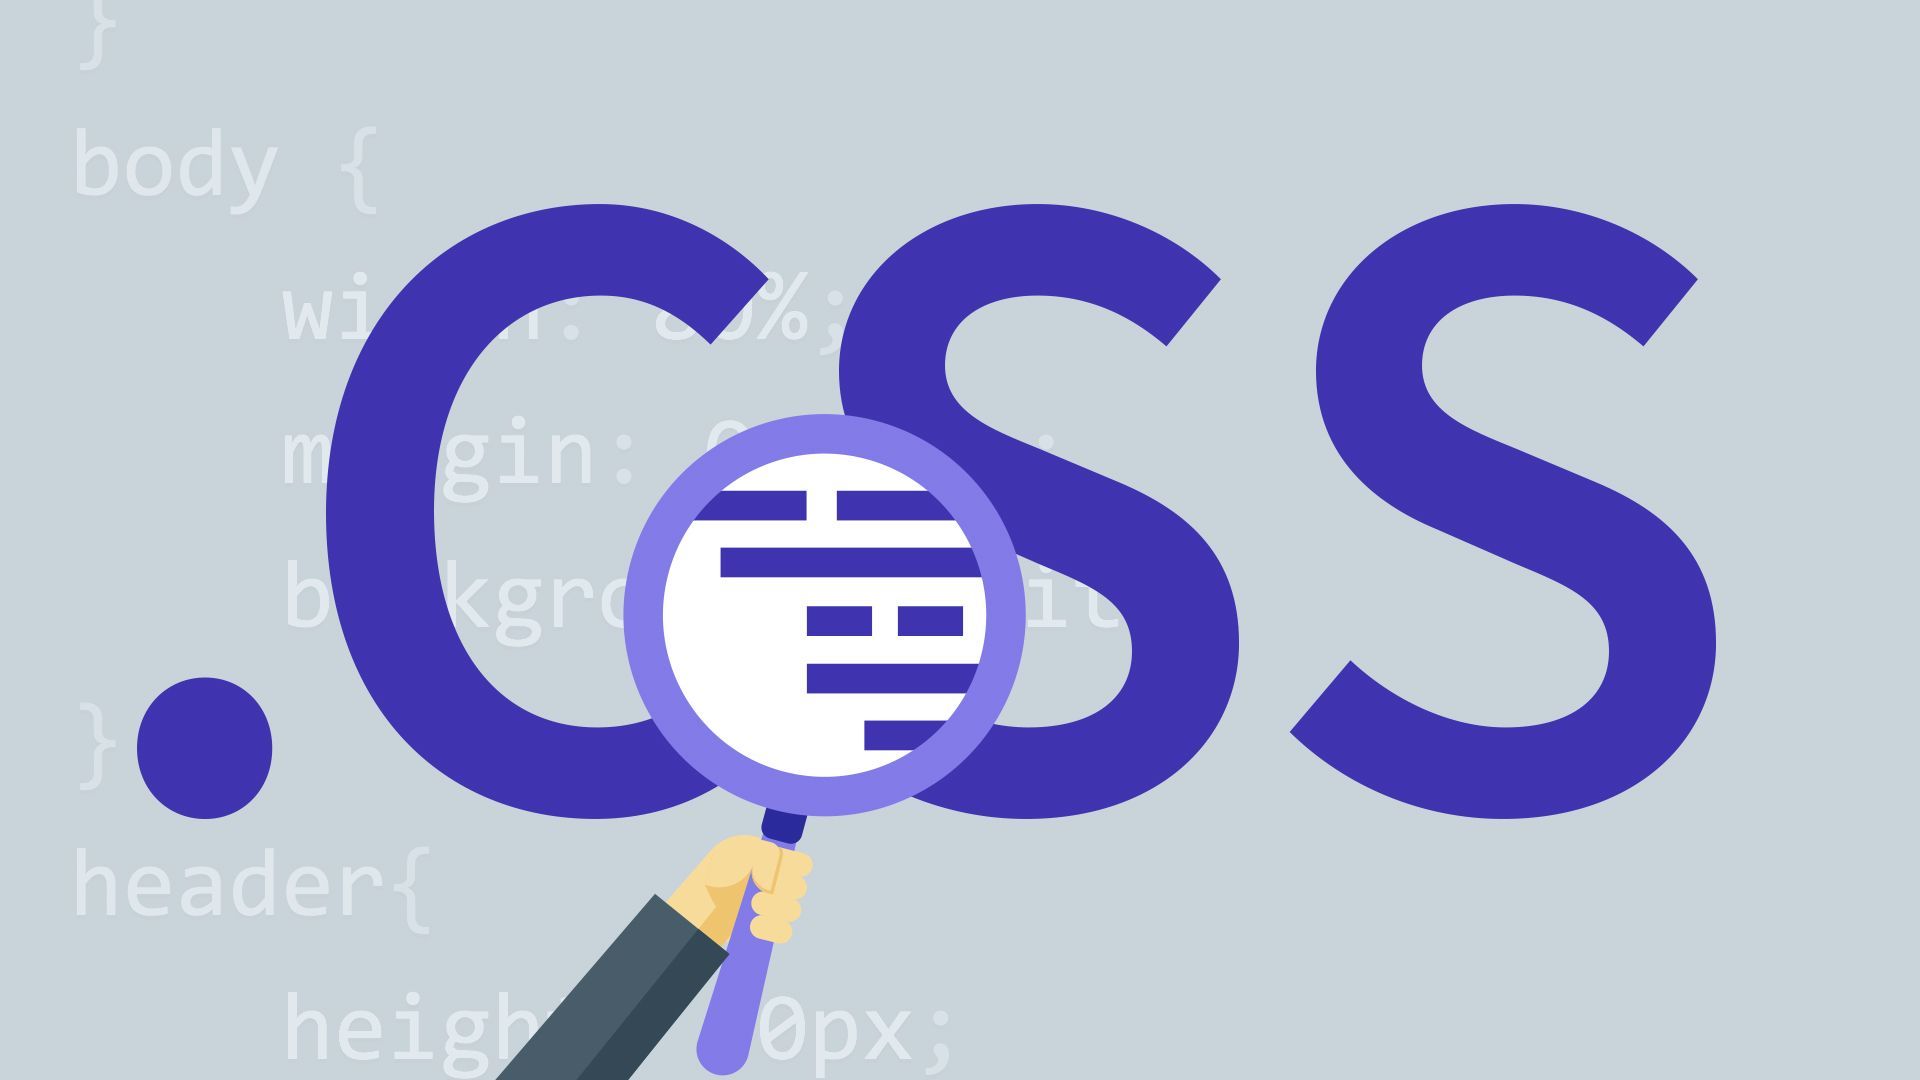 CSS-positie plakkerig werkt niet